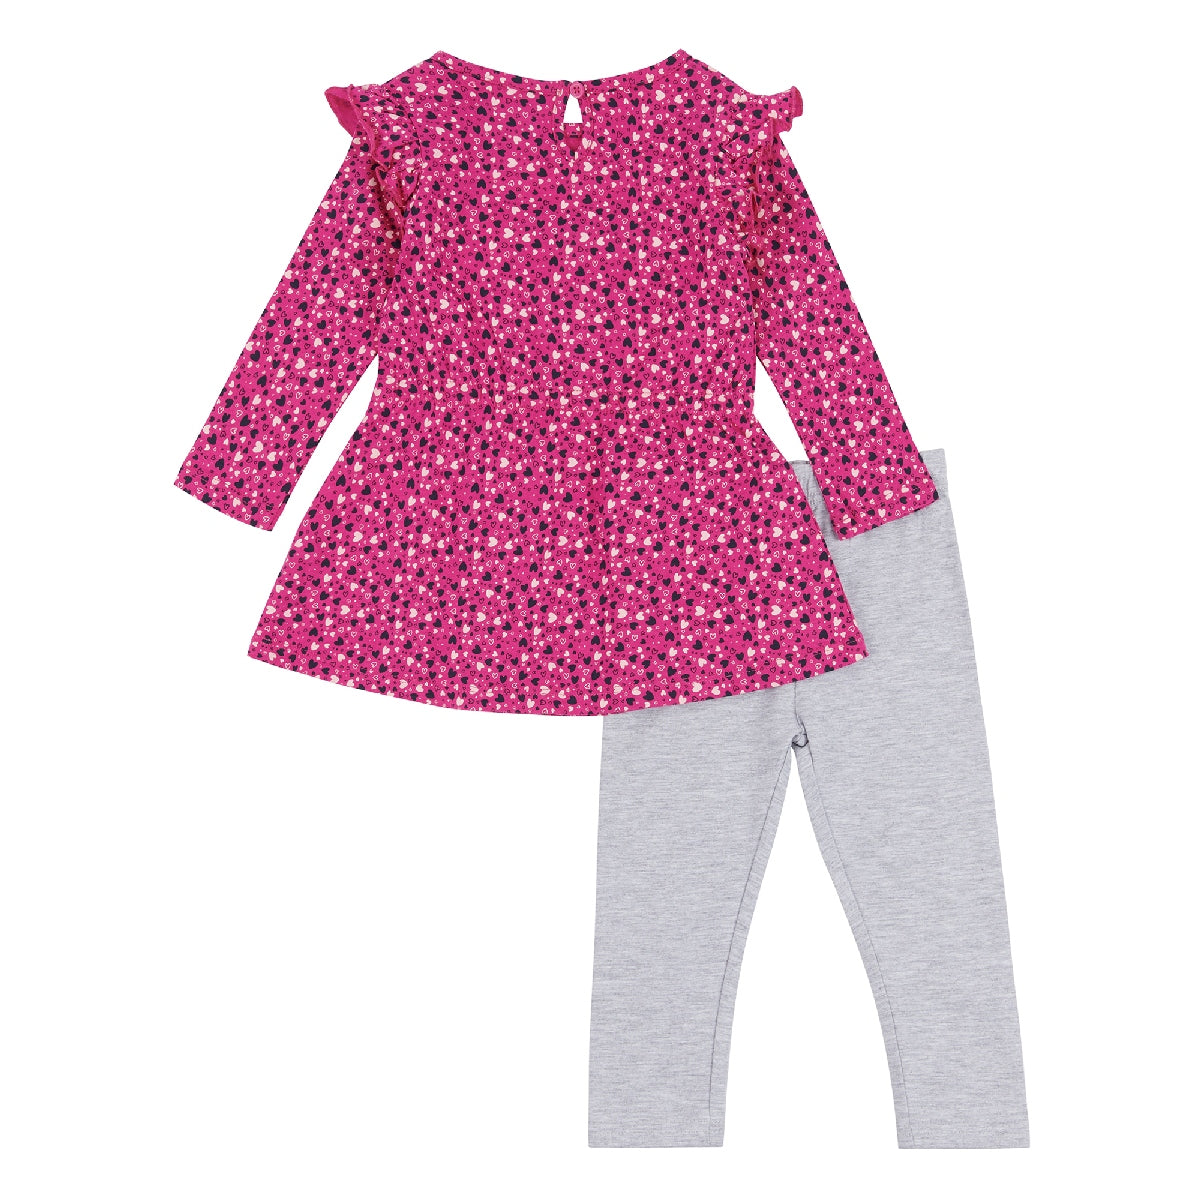 Elle Toddler Heart Frill Dress & Matching Leggings Set